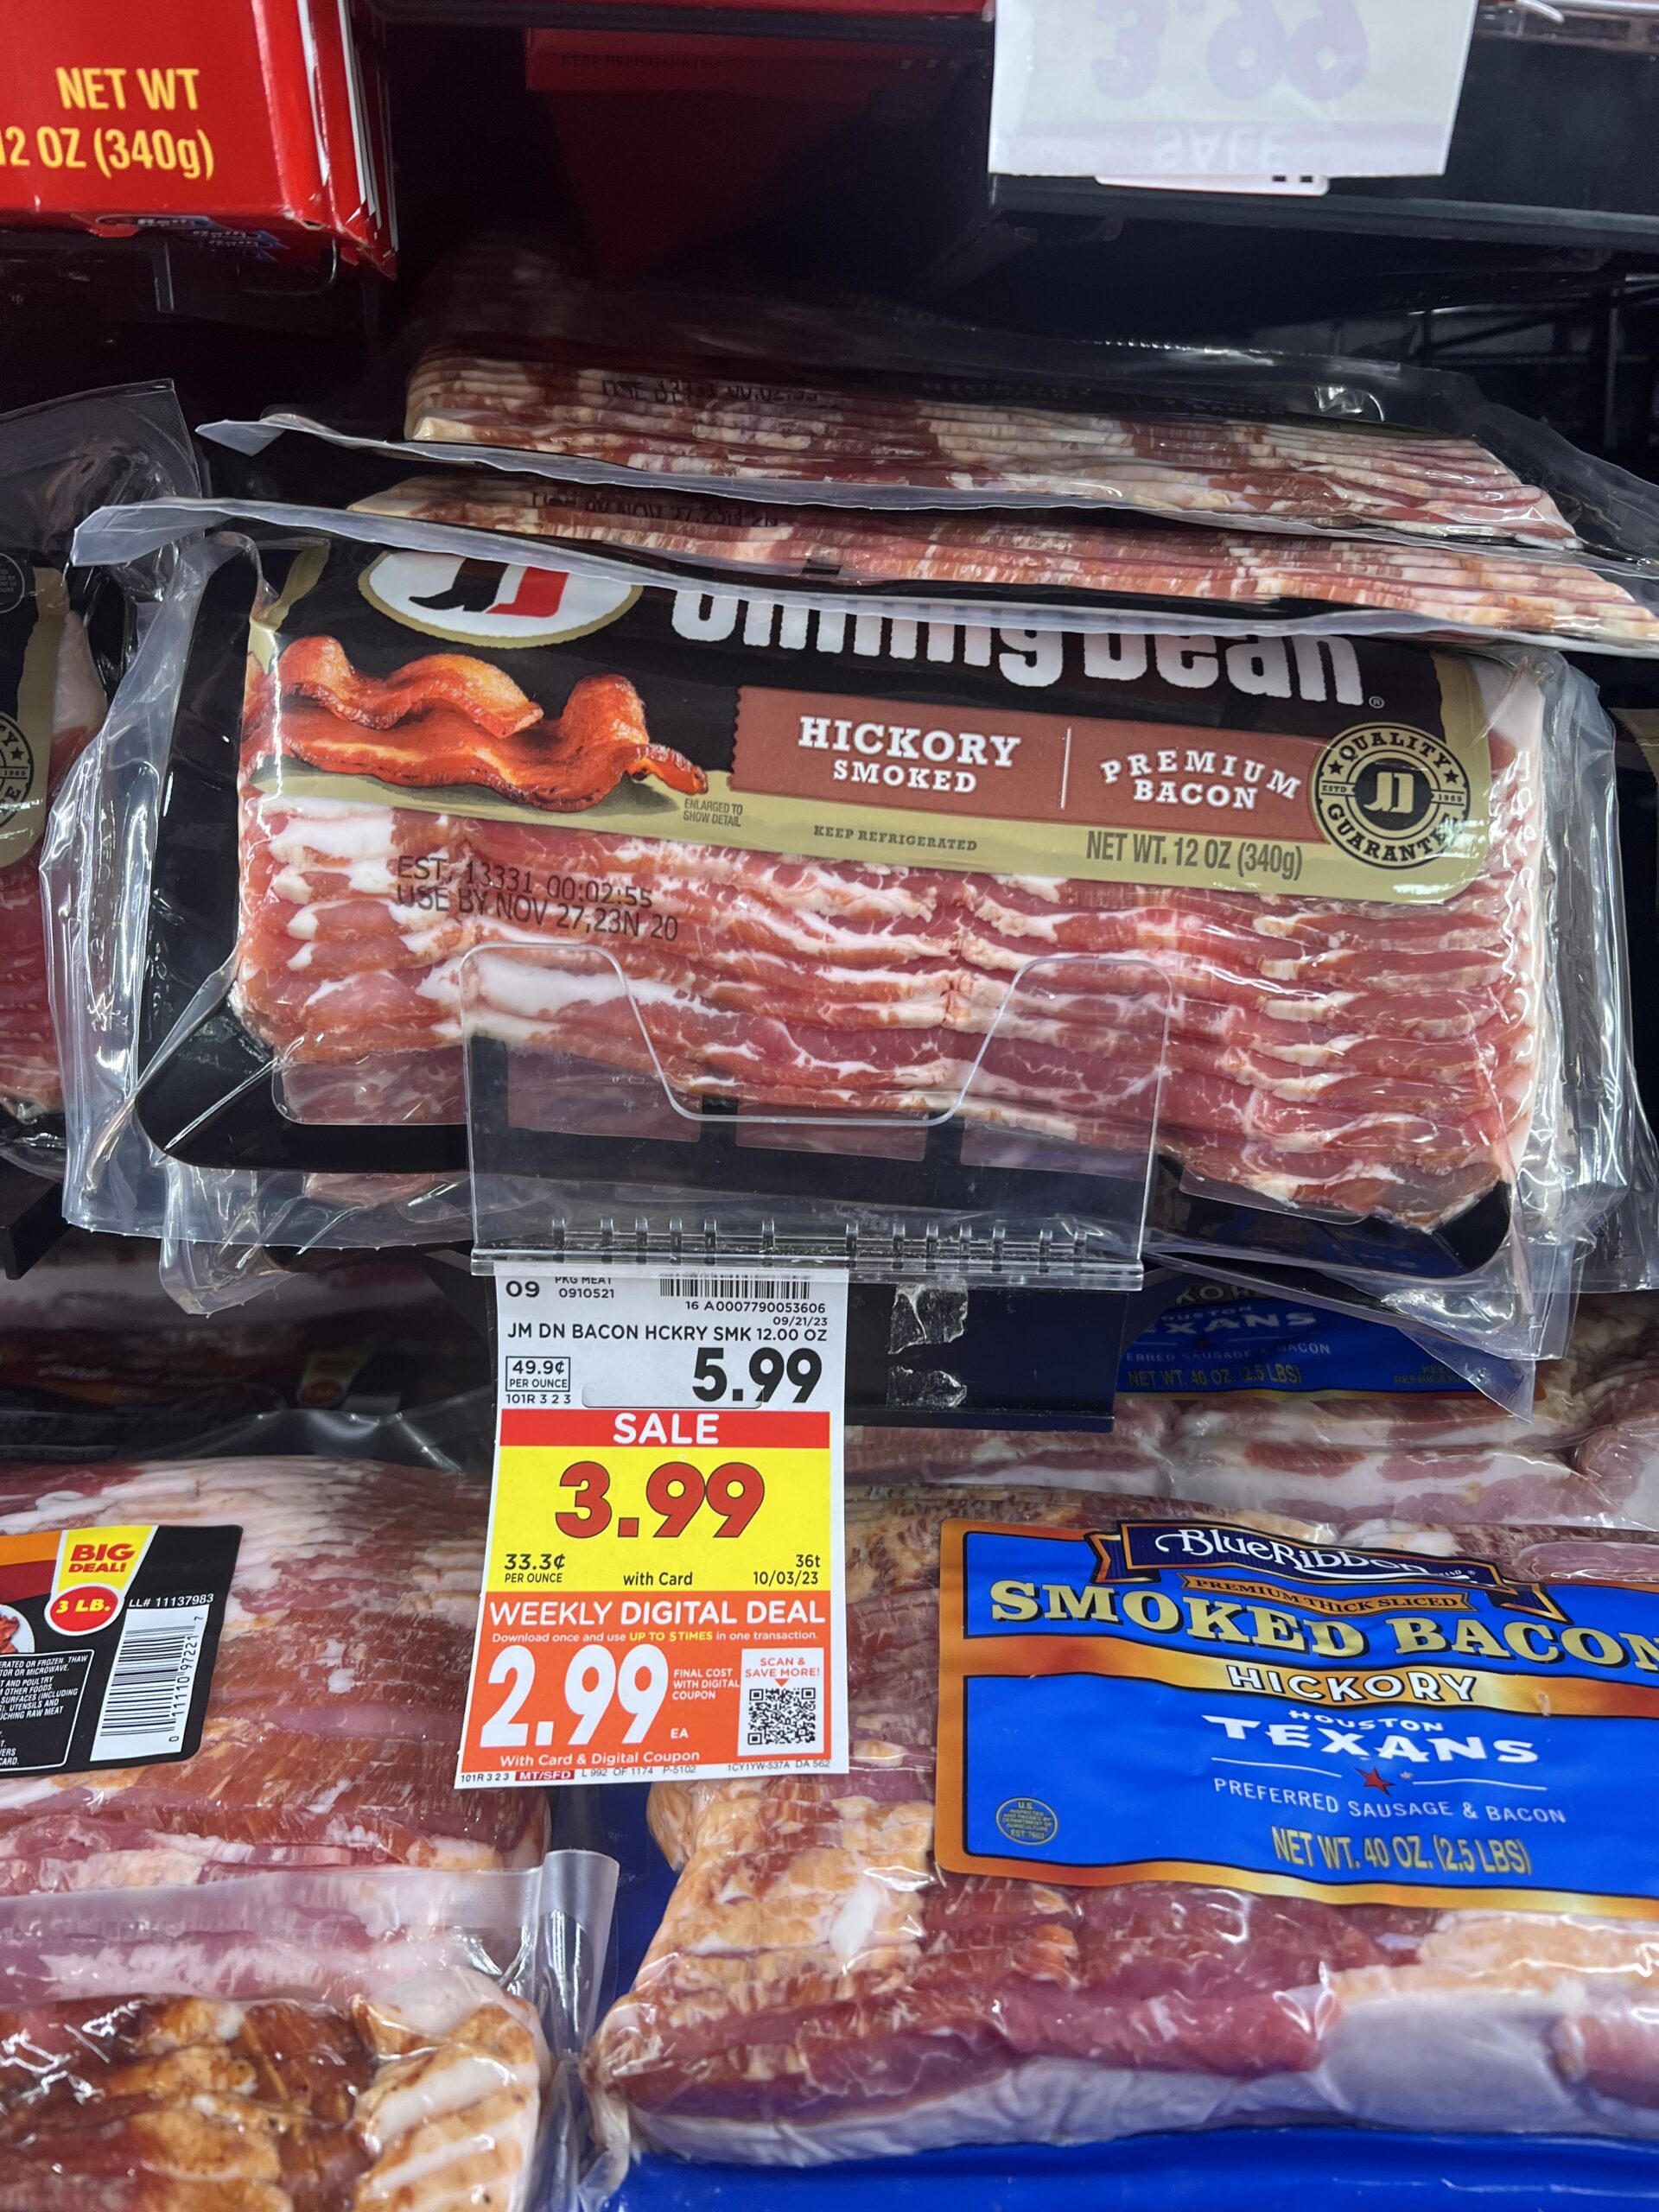 jimmy dean bacon kroger shelf image 3